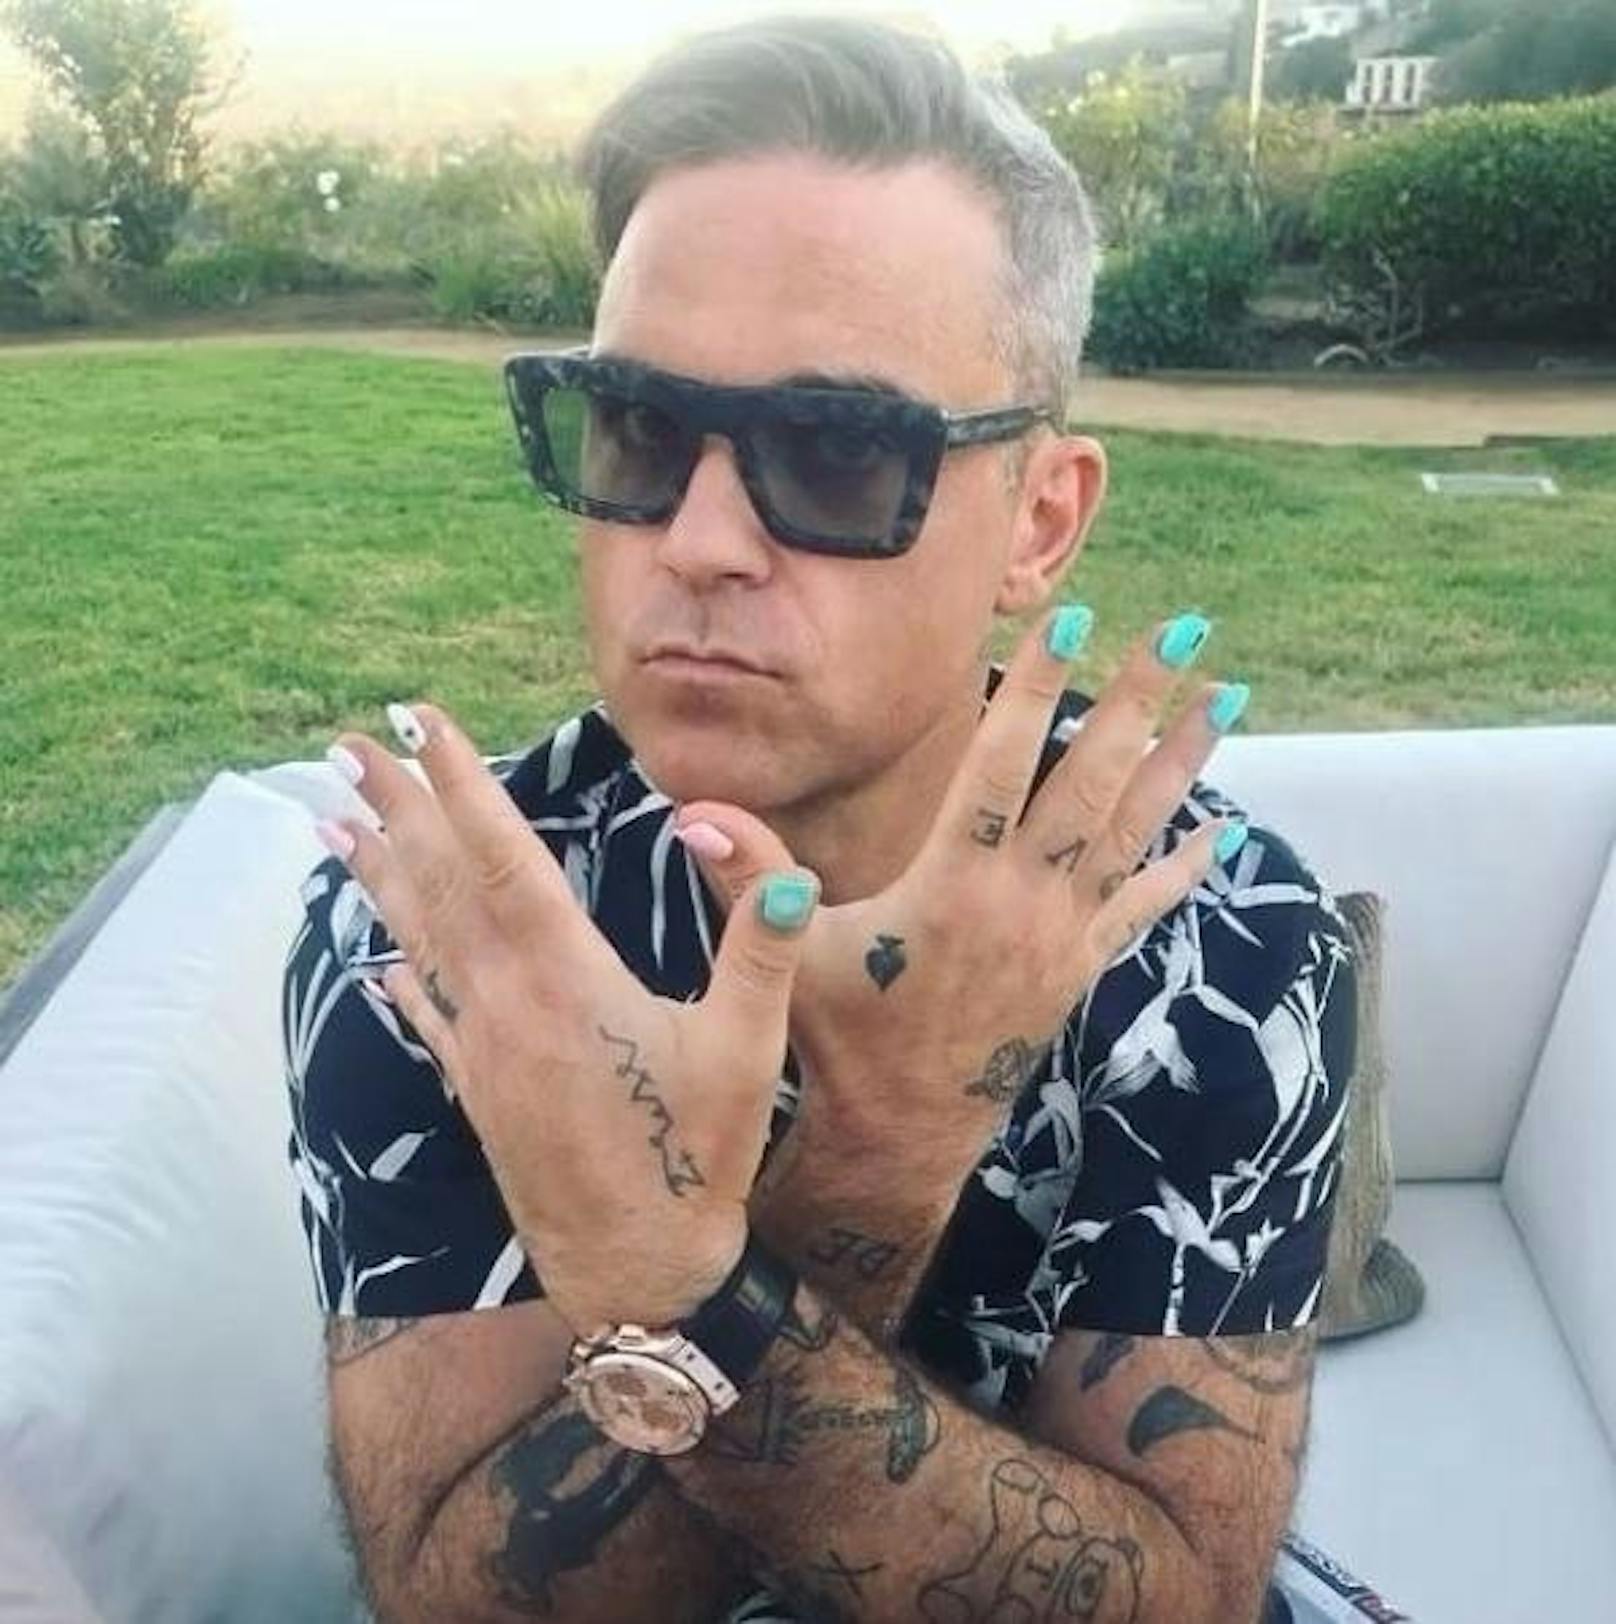 26.09.2018: Als "Väterliche Pflichten" bezeichnet Robbie Williams seine jadegrün lackierten Fingernägel auf Instagram. Seine sechsjährige Tochter nahm ihn wohl als Übungsobjekt in Anspruch.